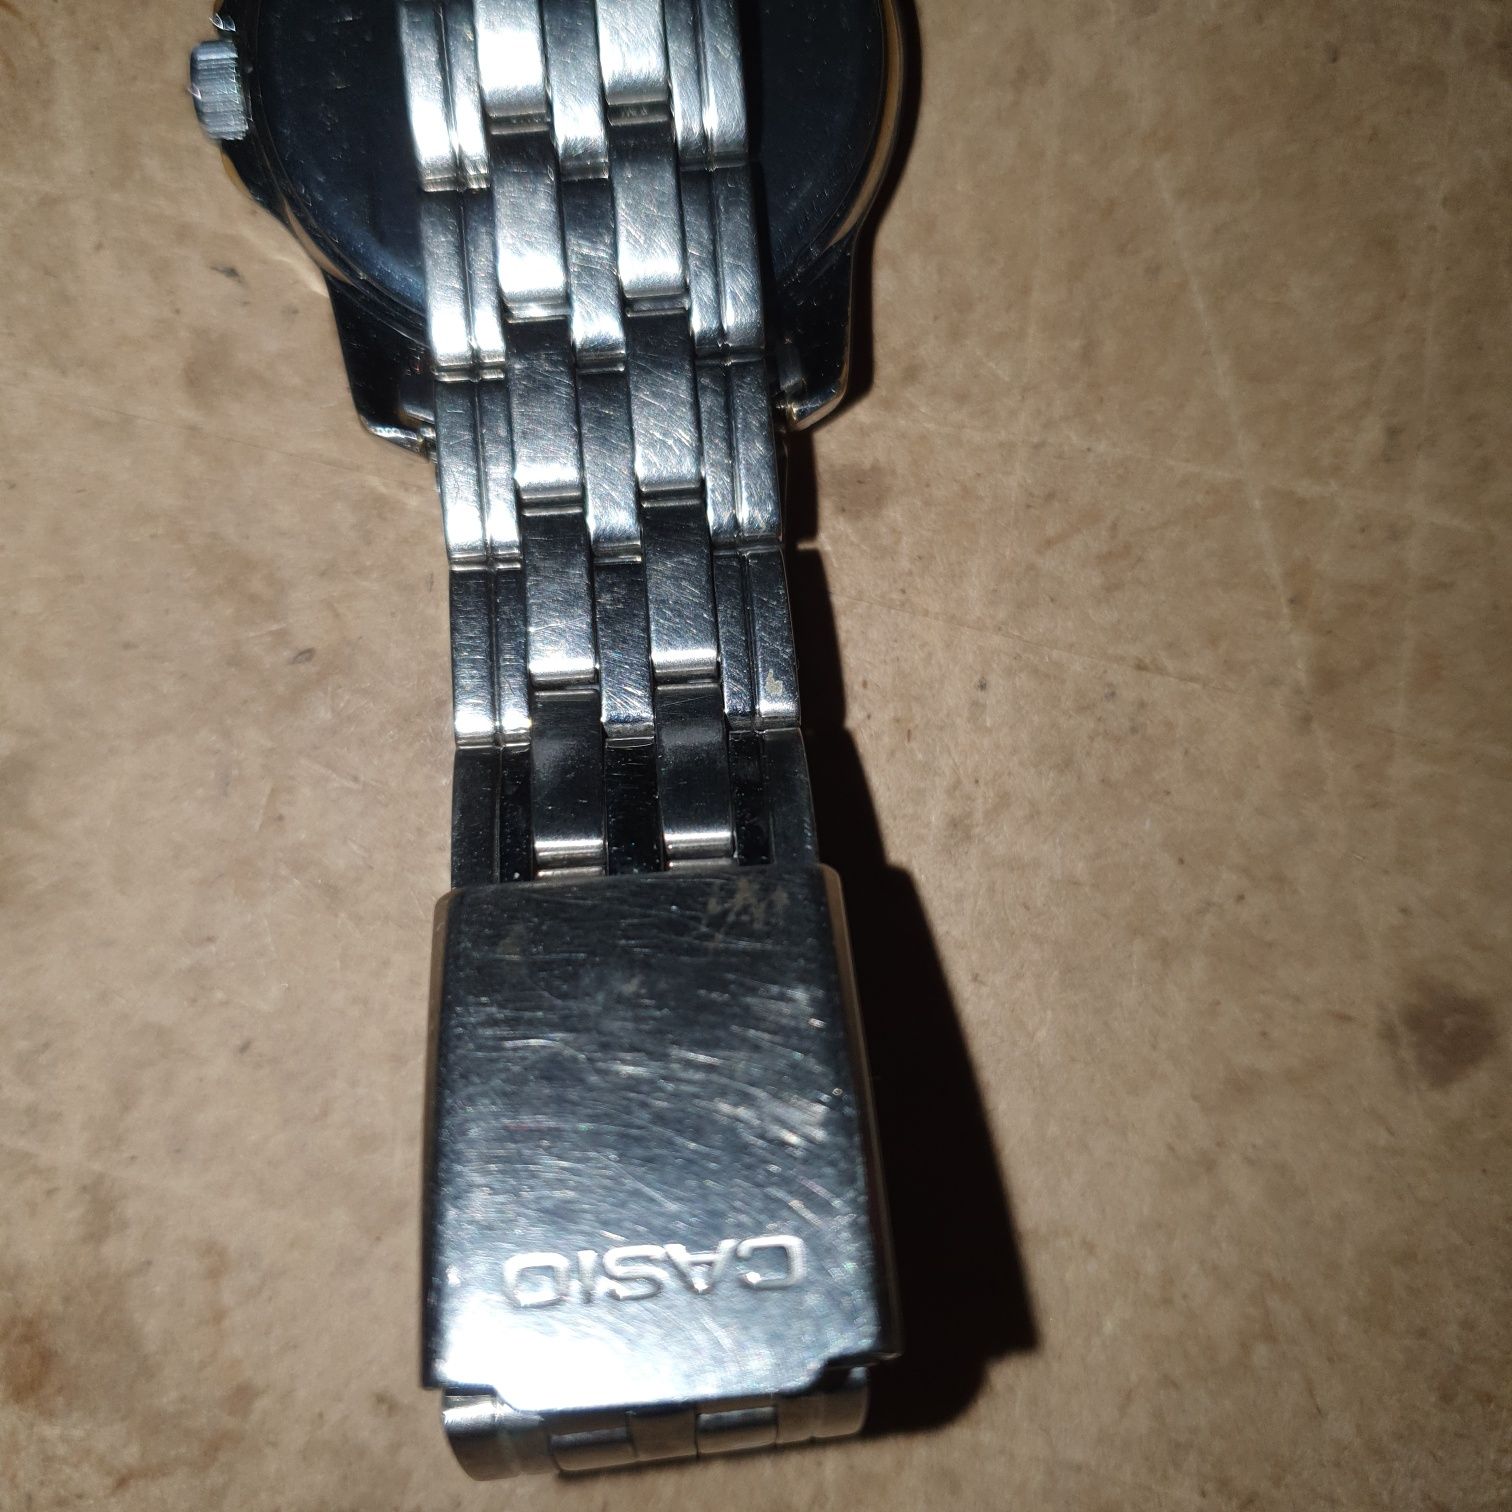 Часы Casio (оригинал) с браслетом электронные.